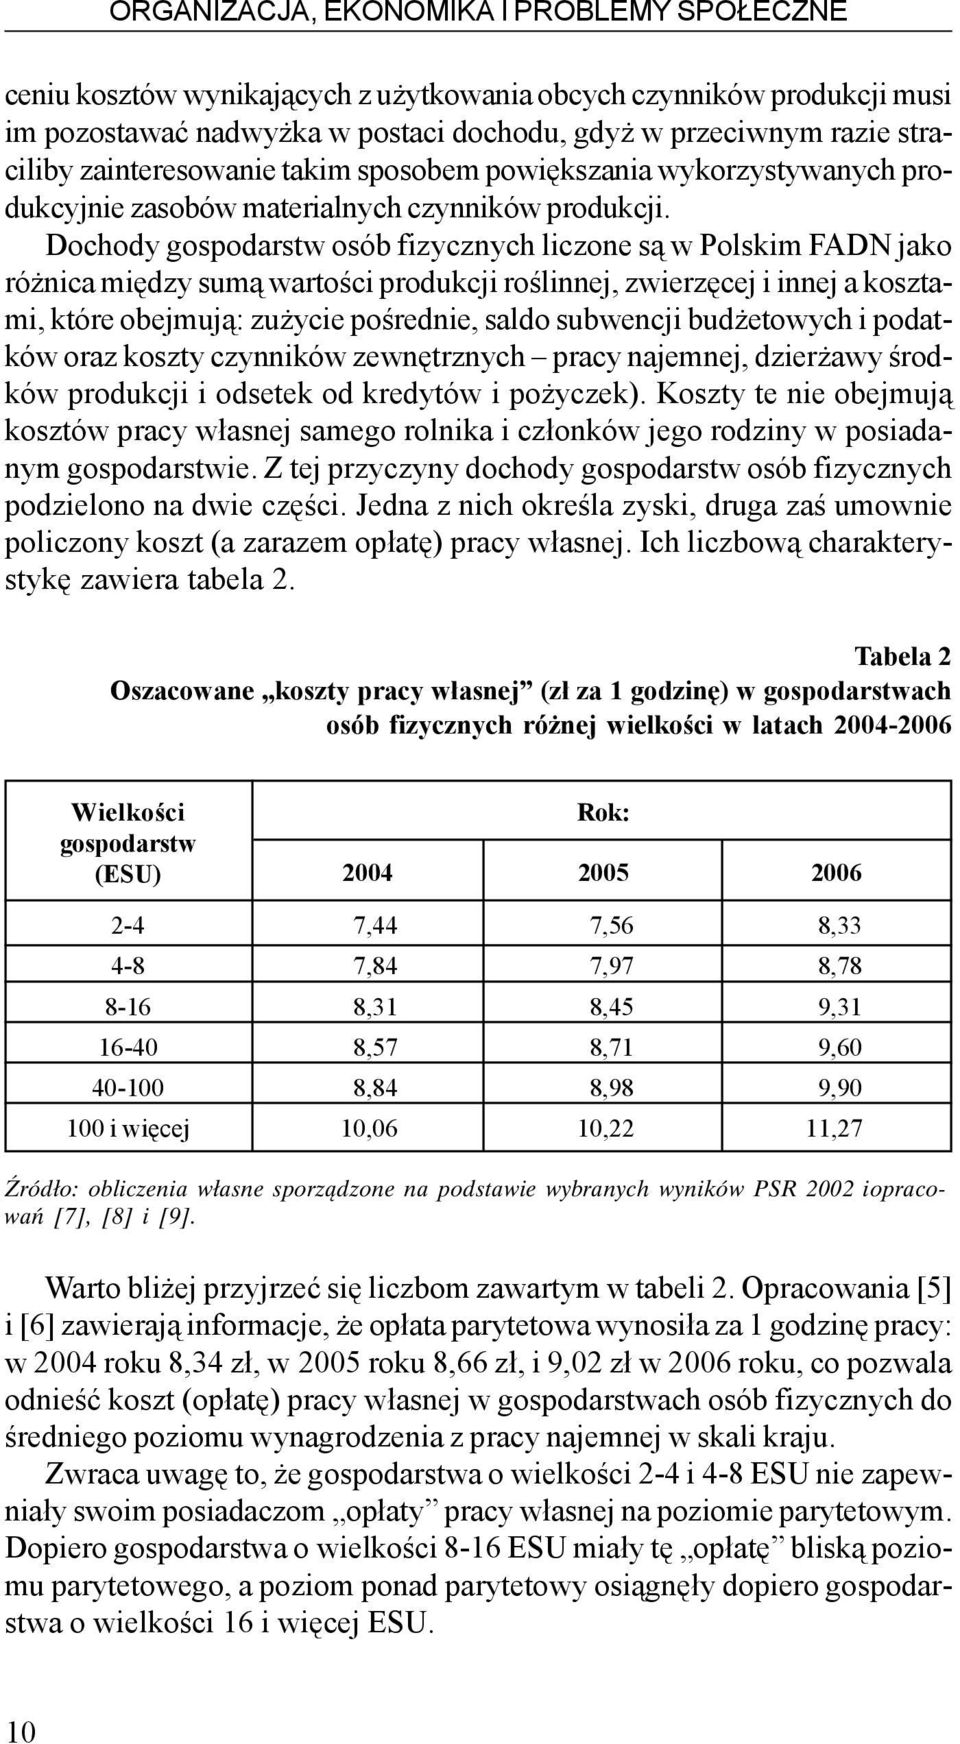 Dochody gospodarstw osób fizycznych liczone s¹ w Polskim FADN jako ró nica miêdzy sum¹ wartoœci produkcji roœlinnej, zwierzêcej i innej a kosztami, które obejmuj¹: zu ycie poœrednie, saldo subwencji